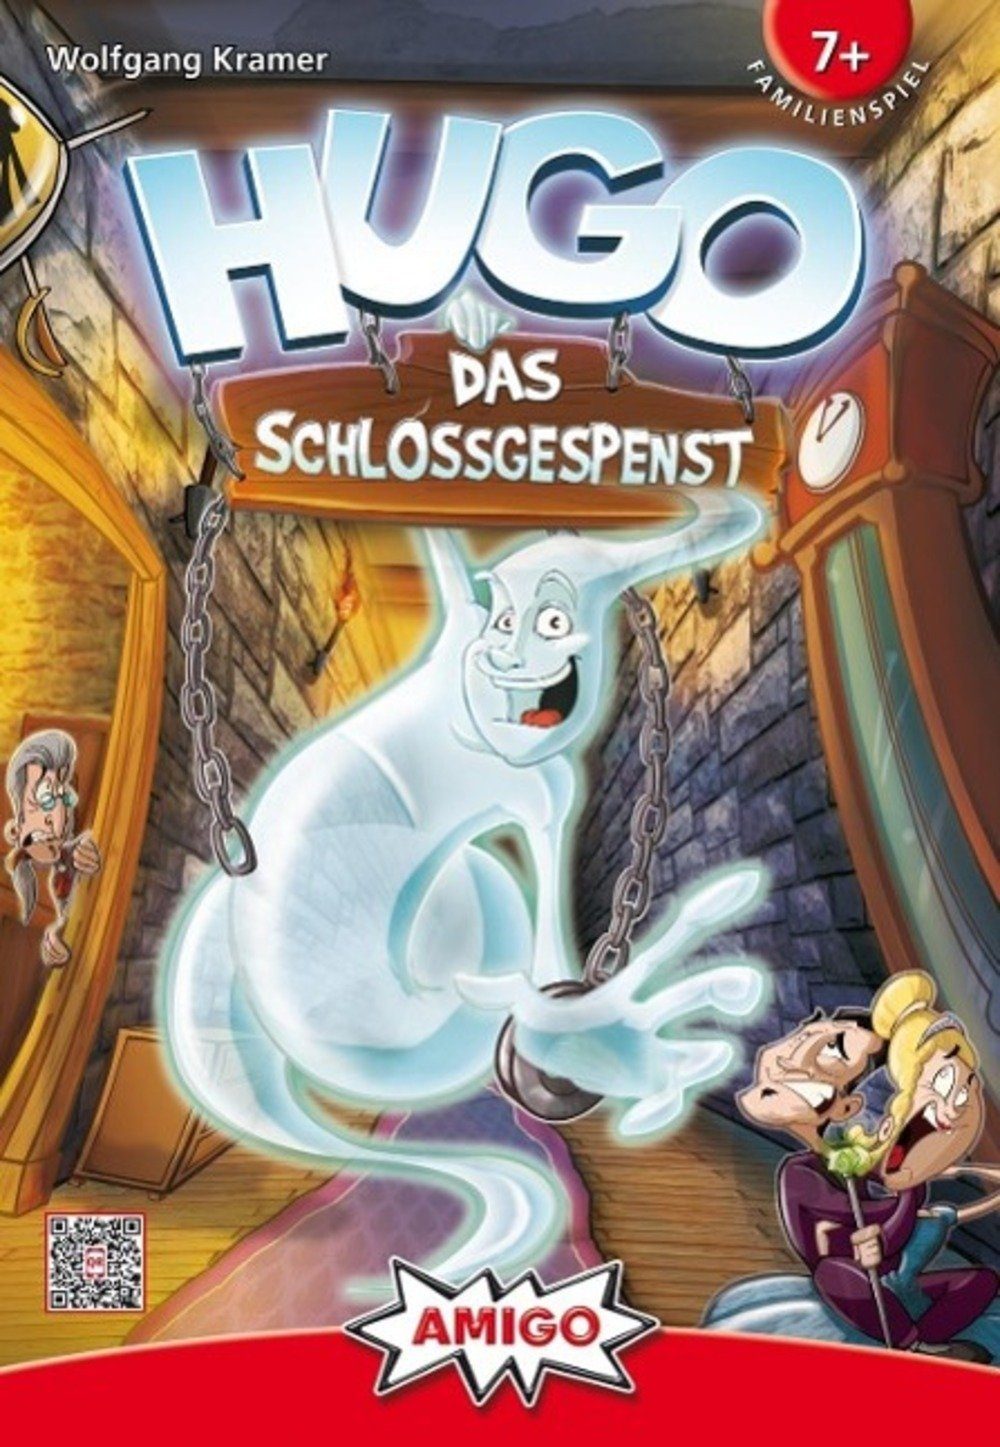 HUGO - Spiel, AMIGO Schlossgespenst Das